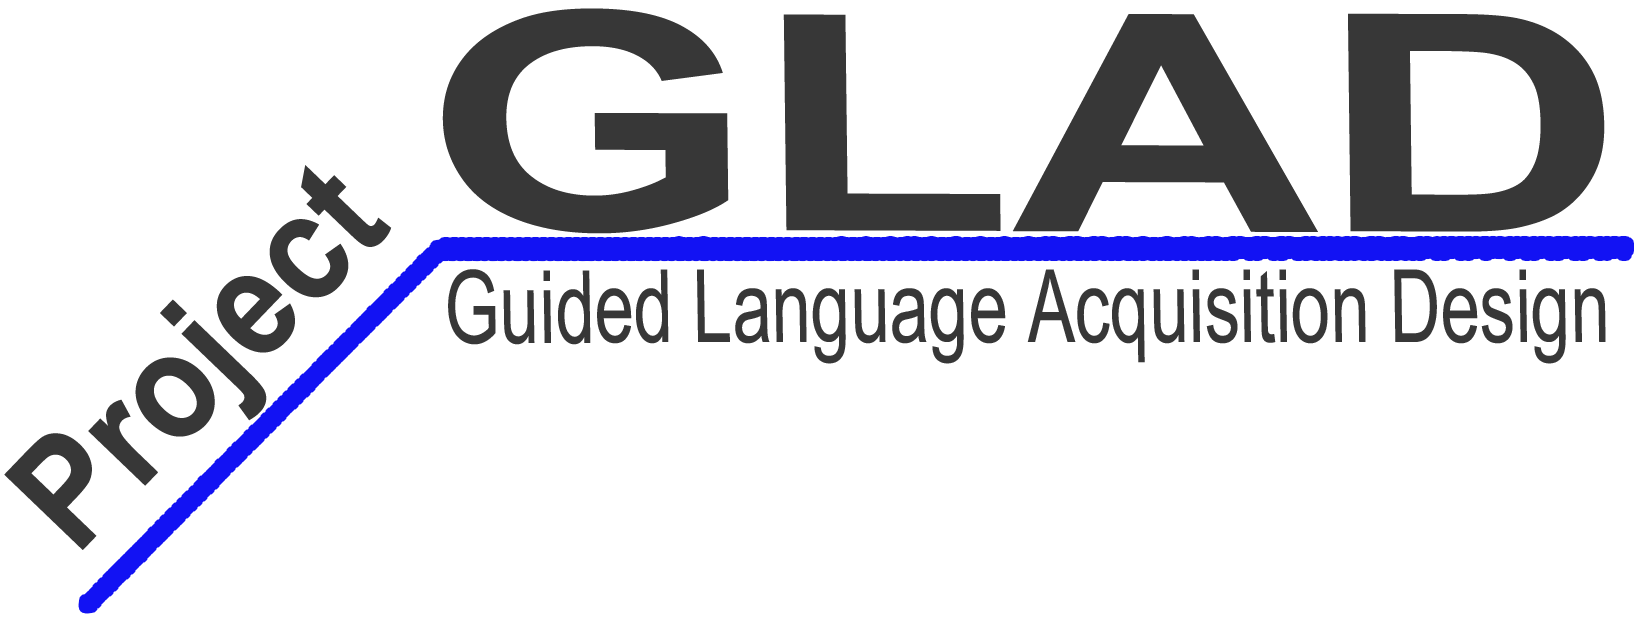 Glad Logo - Images - Thumbnails